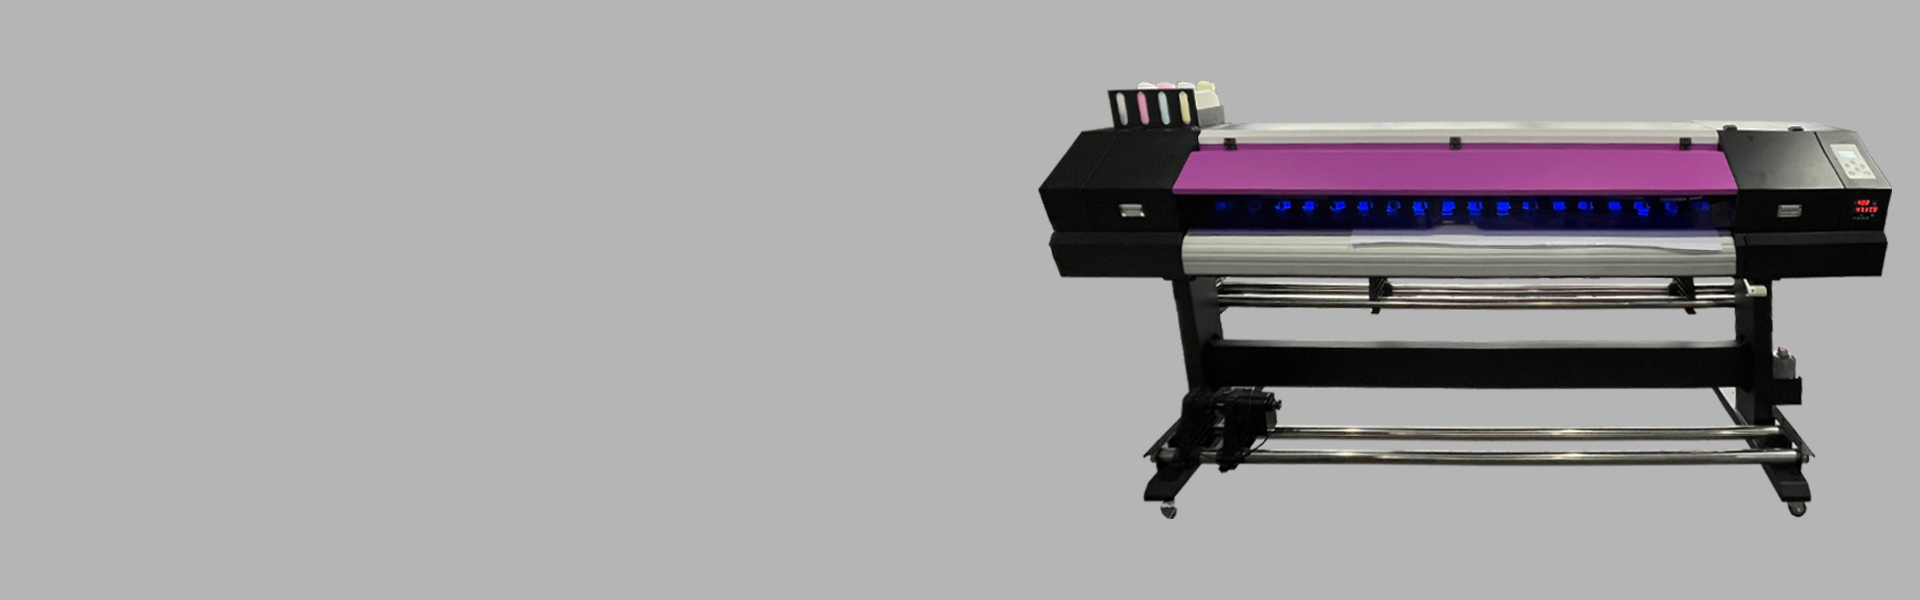 Impresora I1600-E1 de 1,8 m